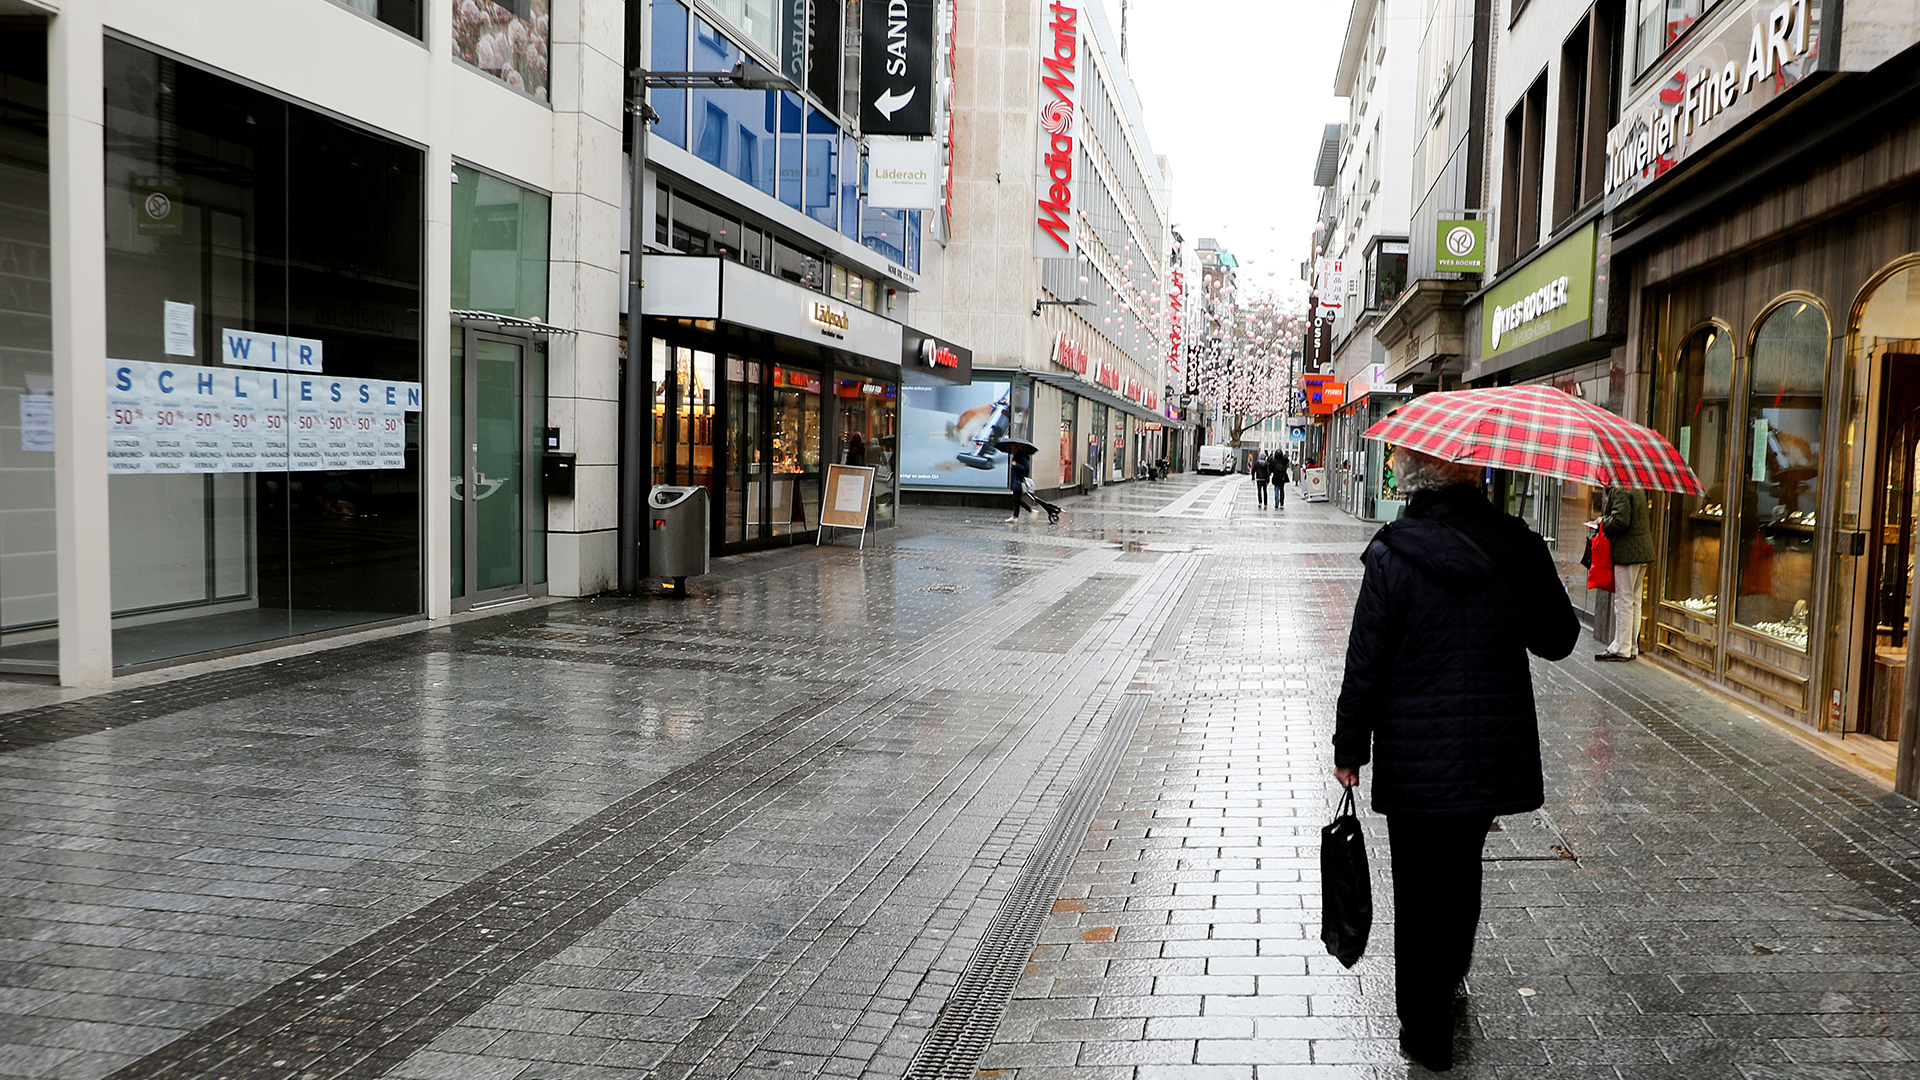 Eine Frau geht durch die leere Fußgängerzone Hohe Straße in Köln, an einem Schaufenster steht "Wir schließen" | dpa